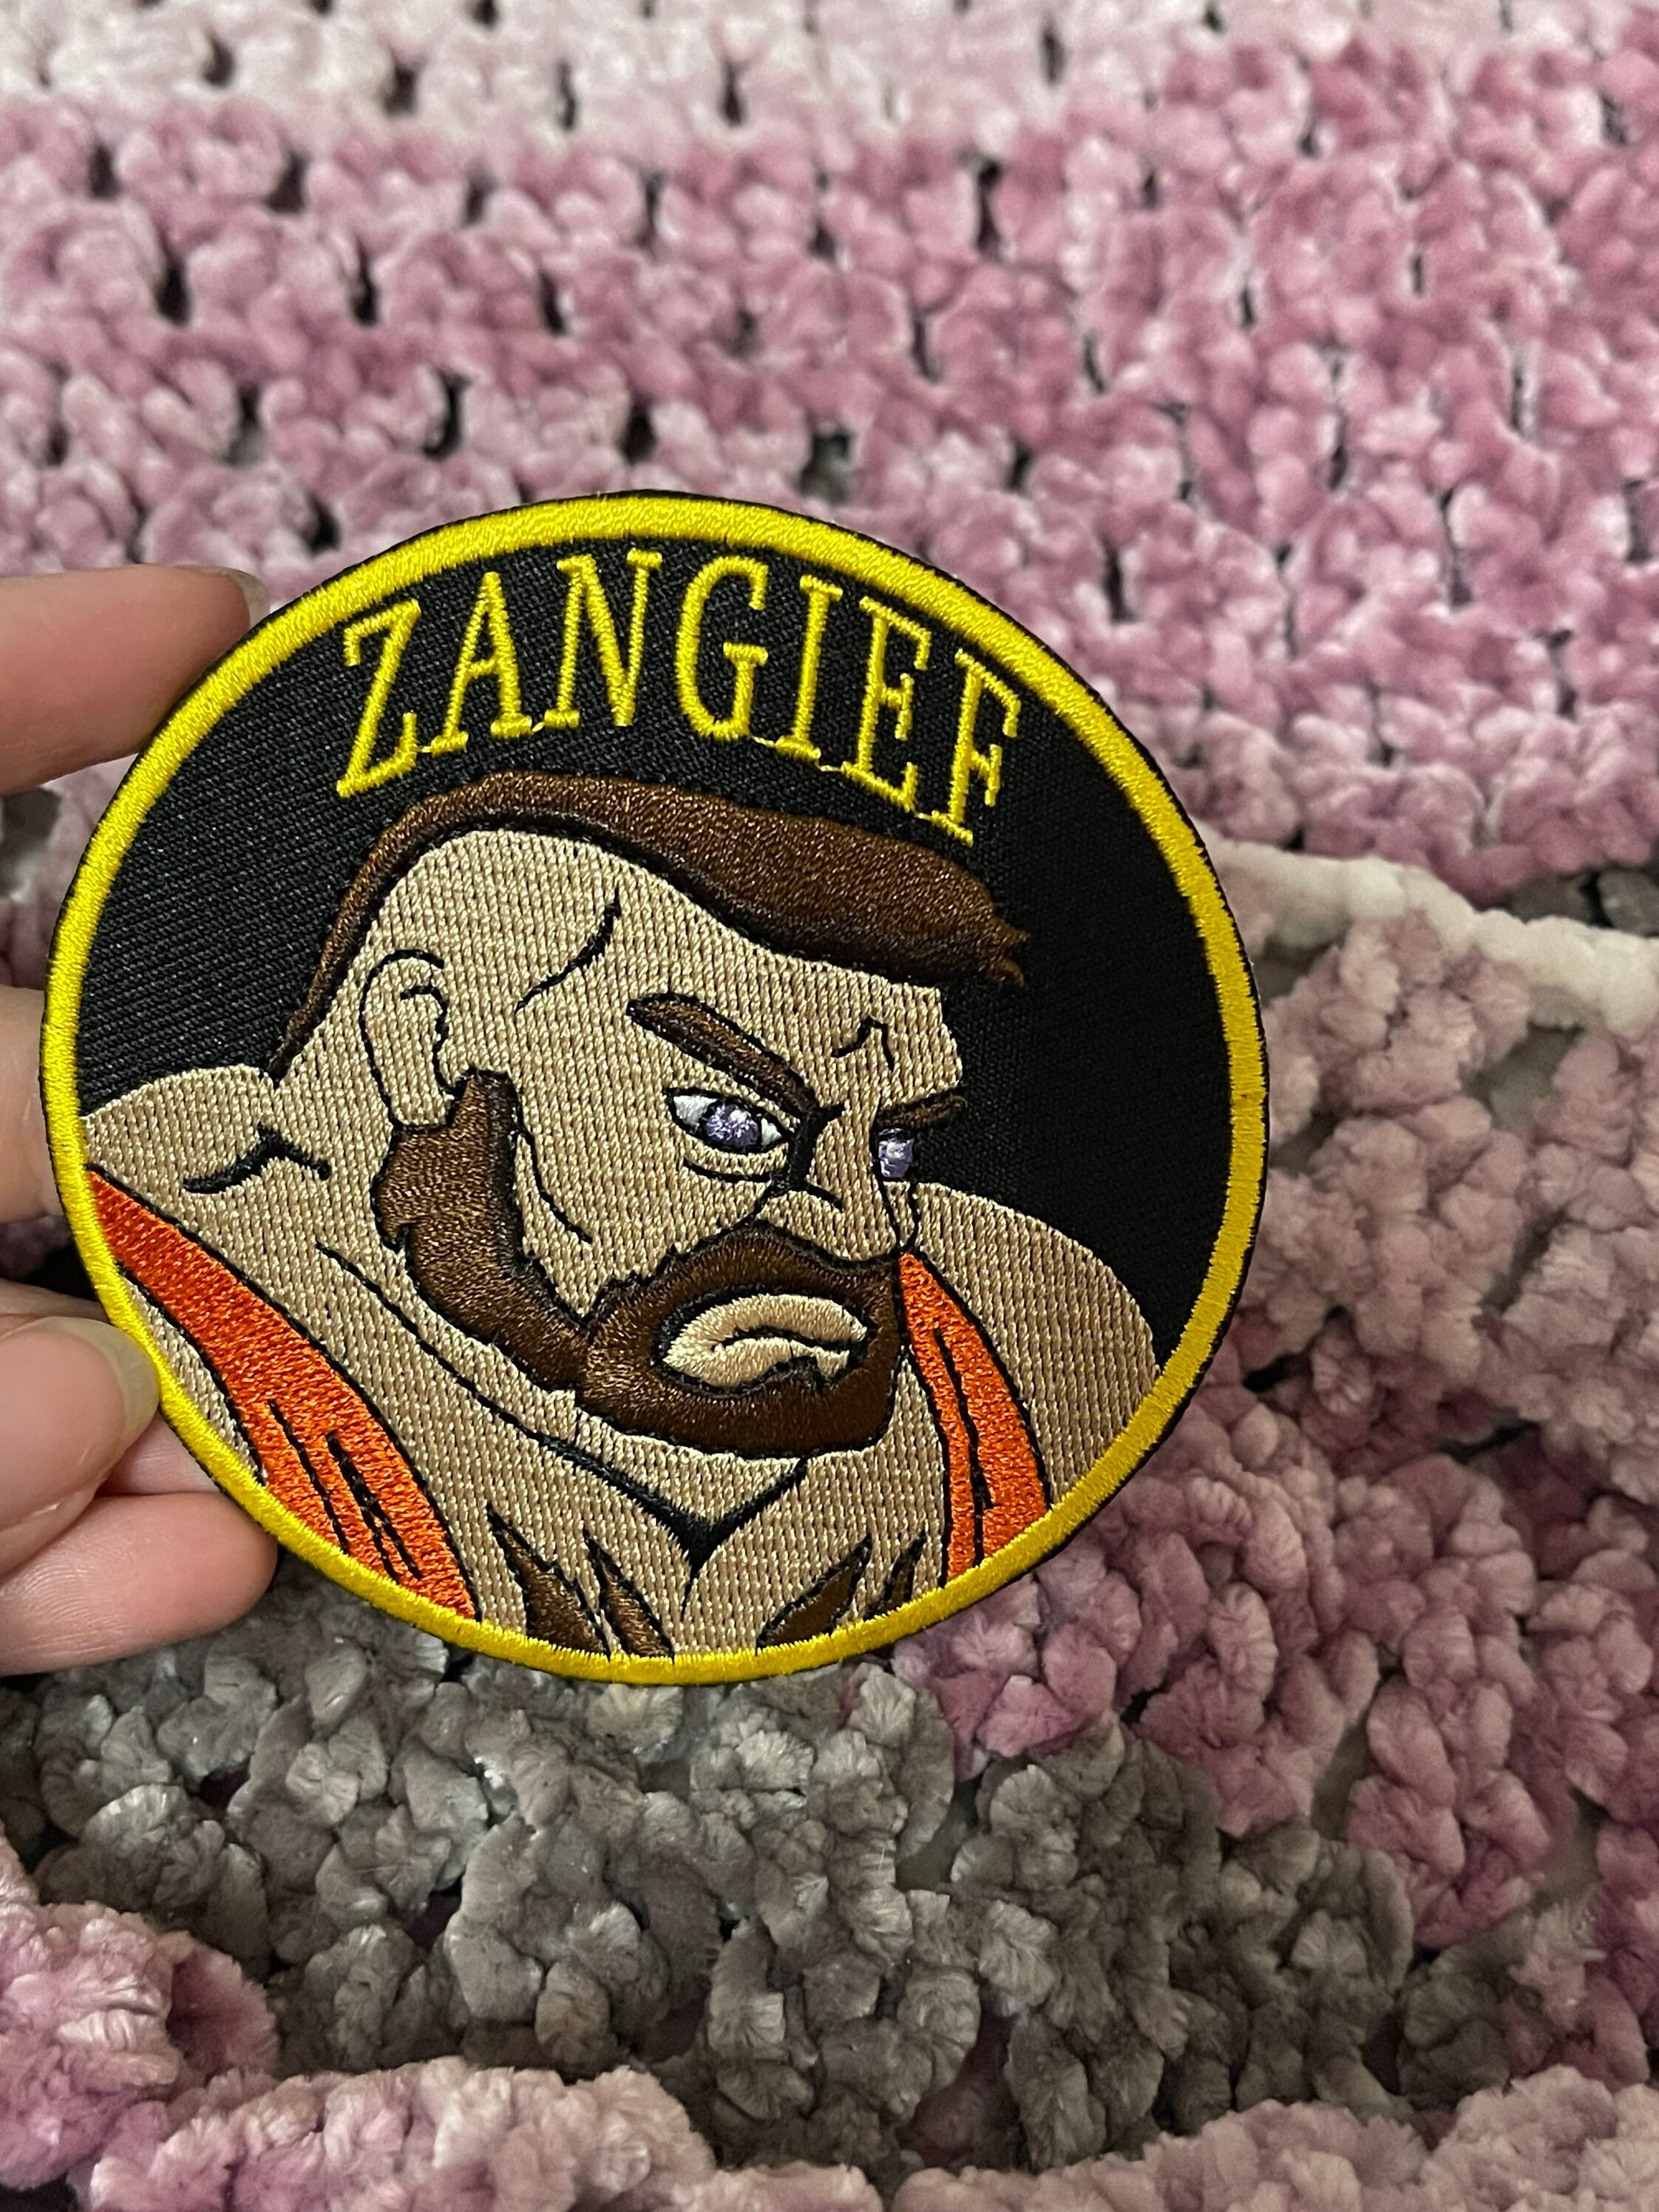 História do Zangief: Street Fighter 6 